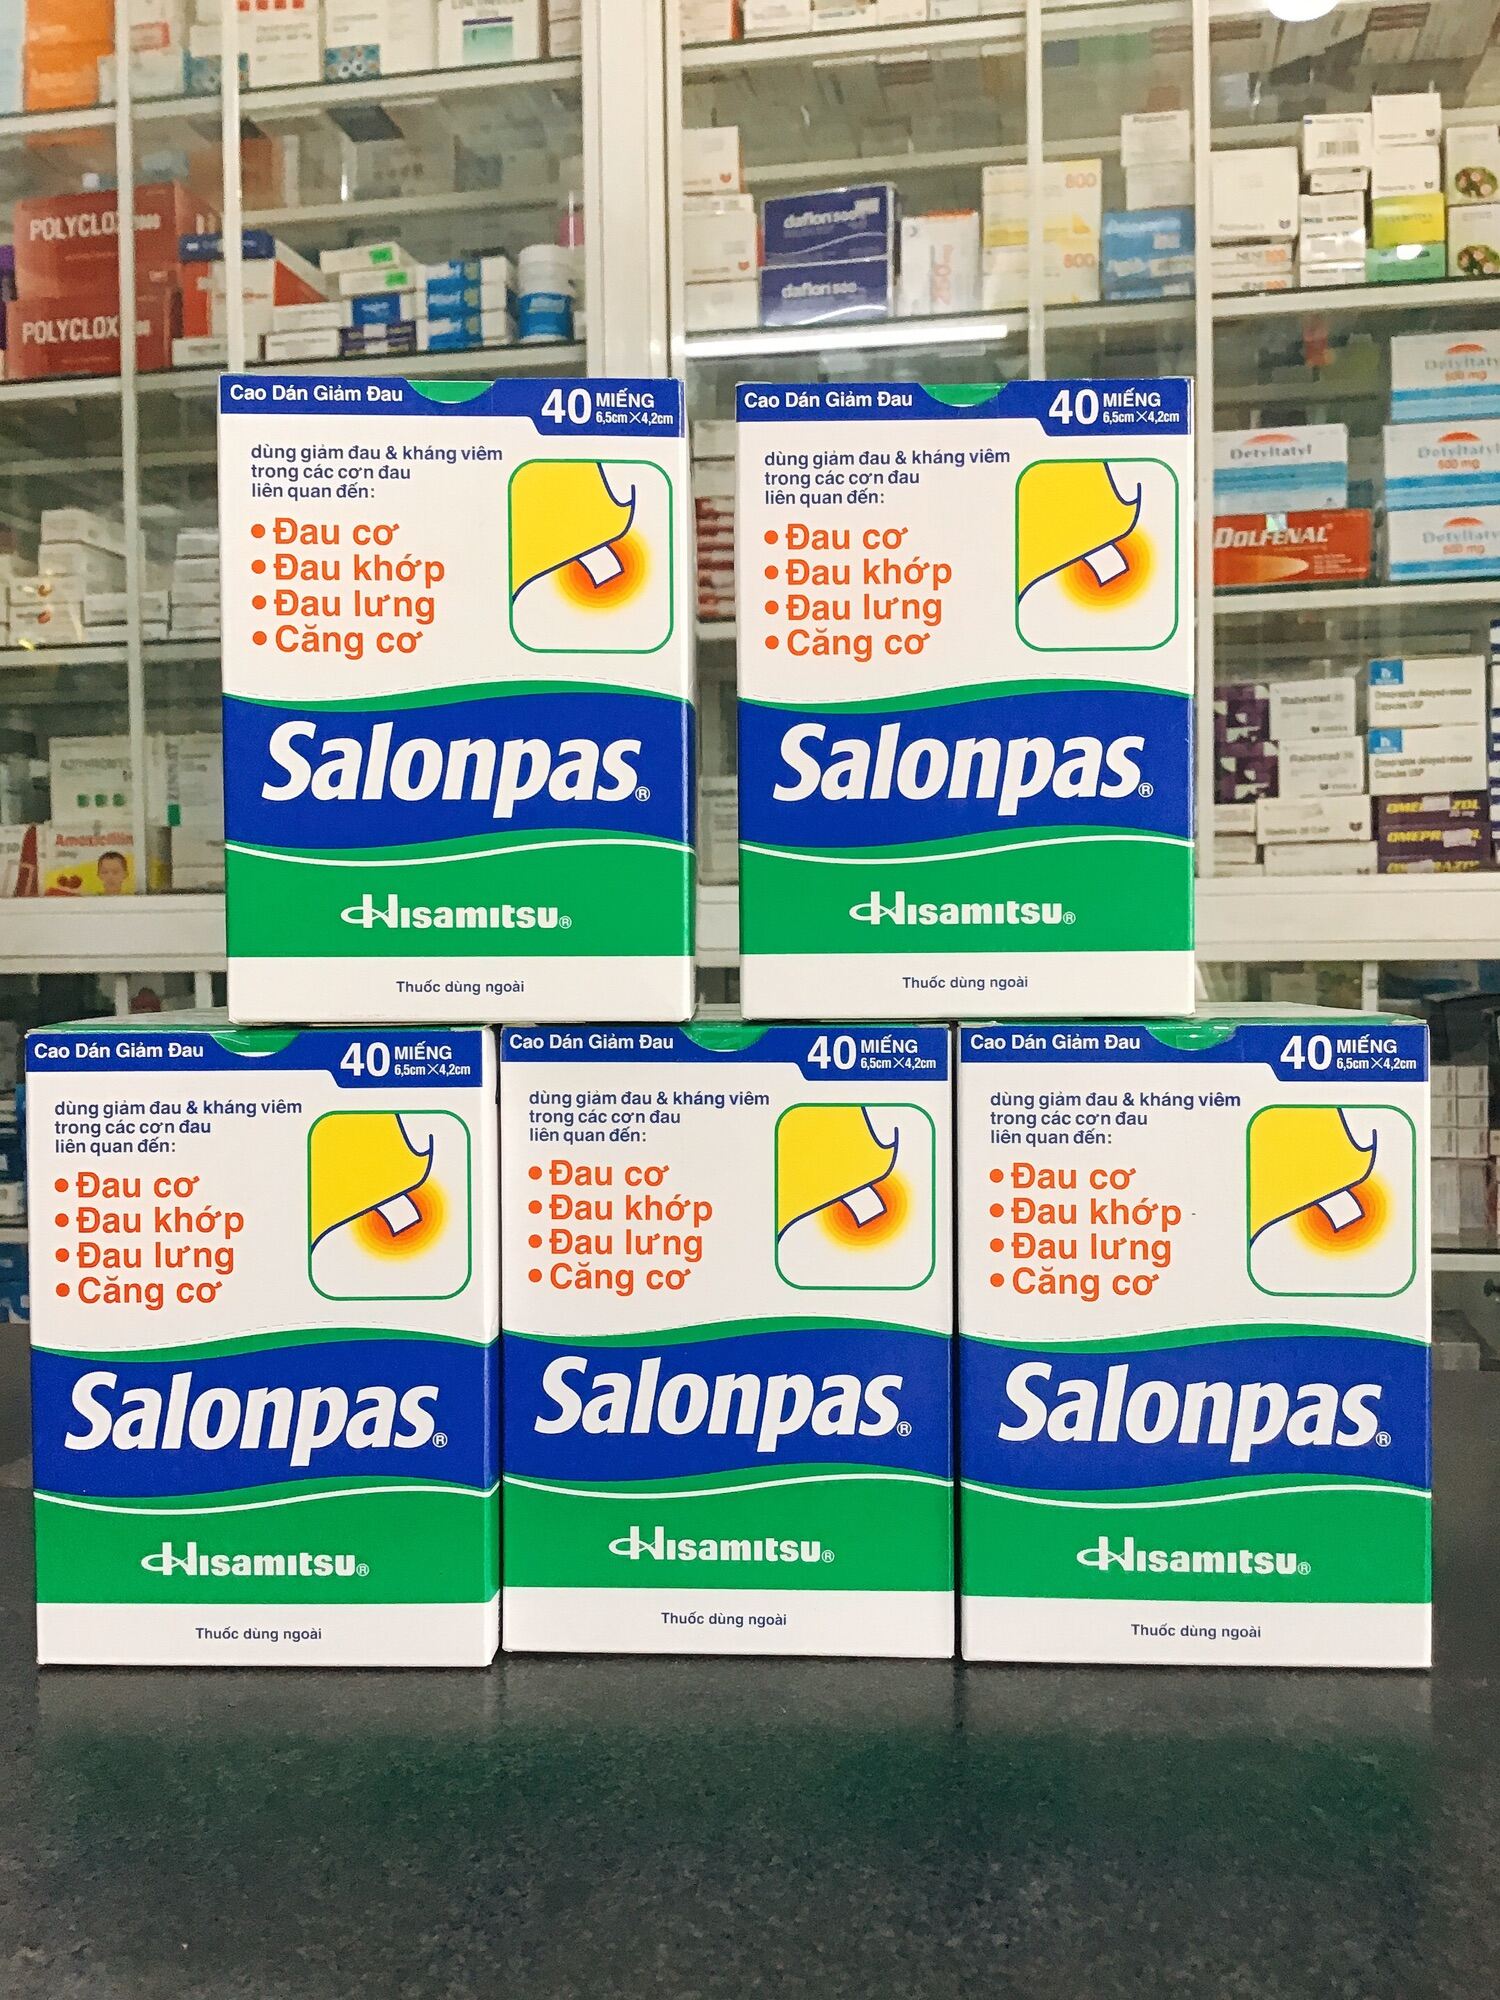 COMBO cao dán giảm đau SALONPAS chính hãng, date xa nhất.